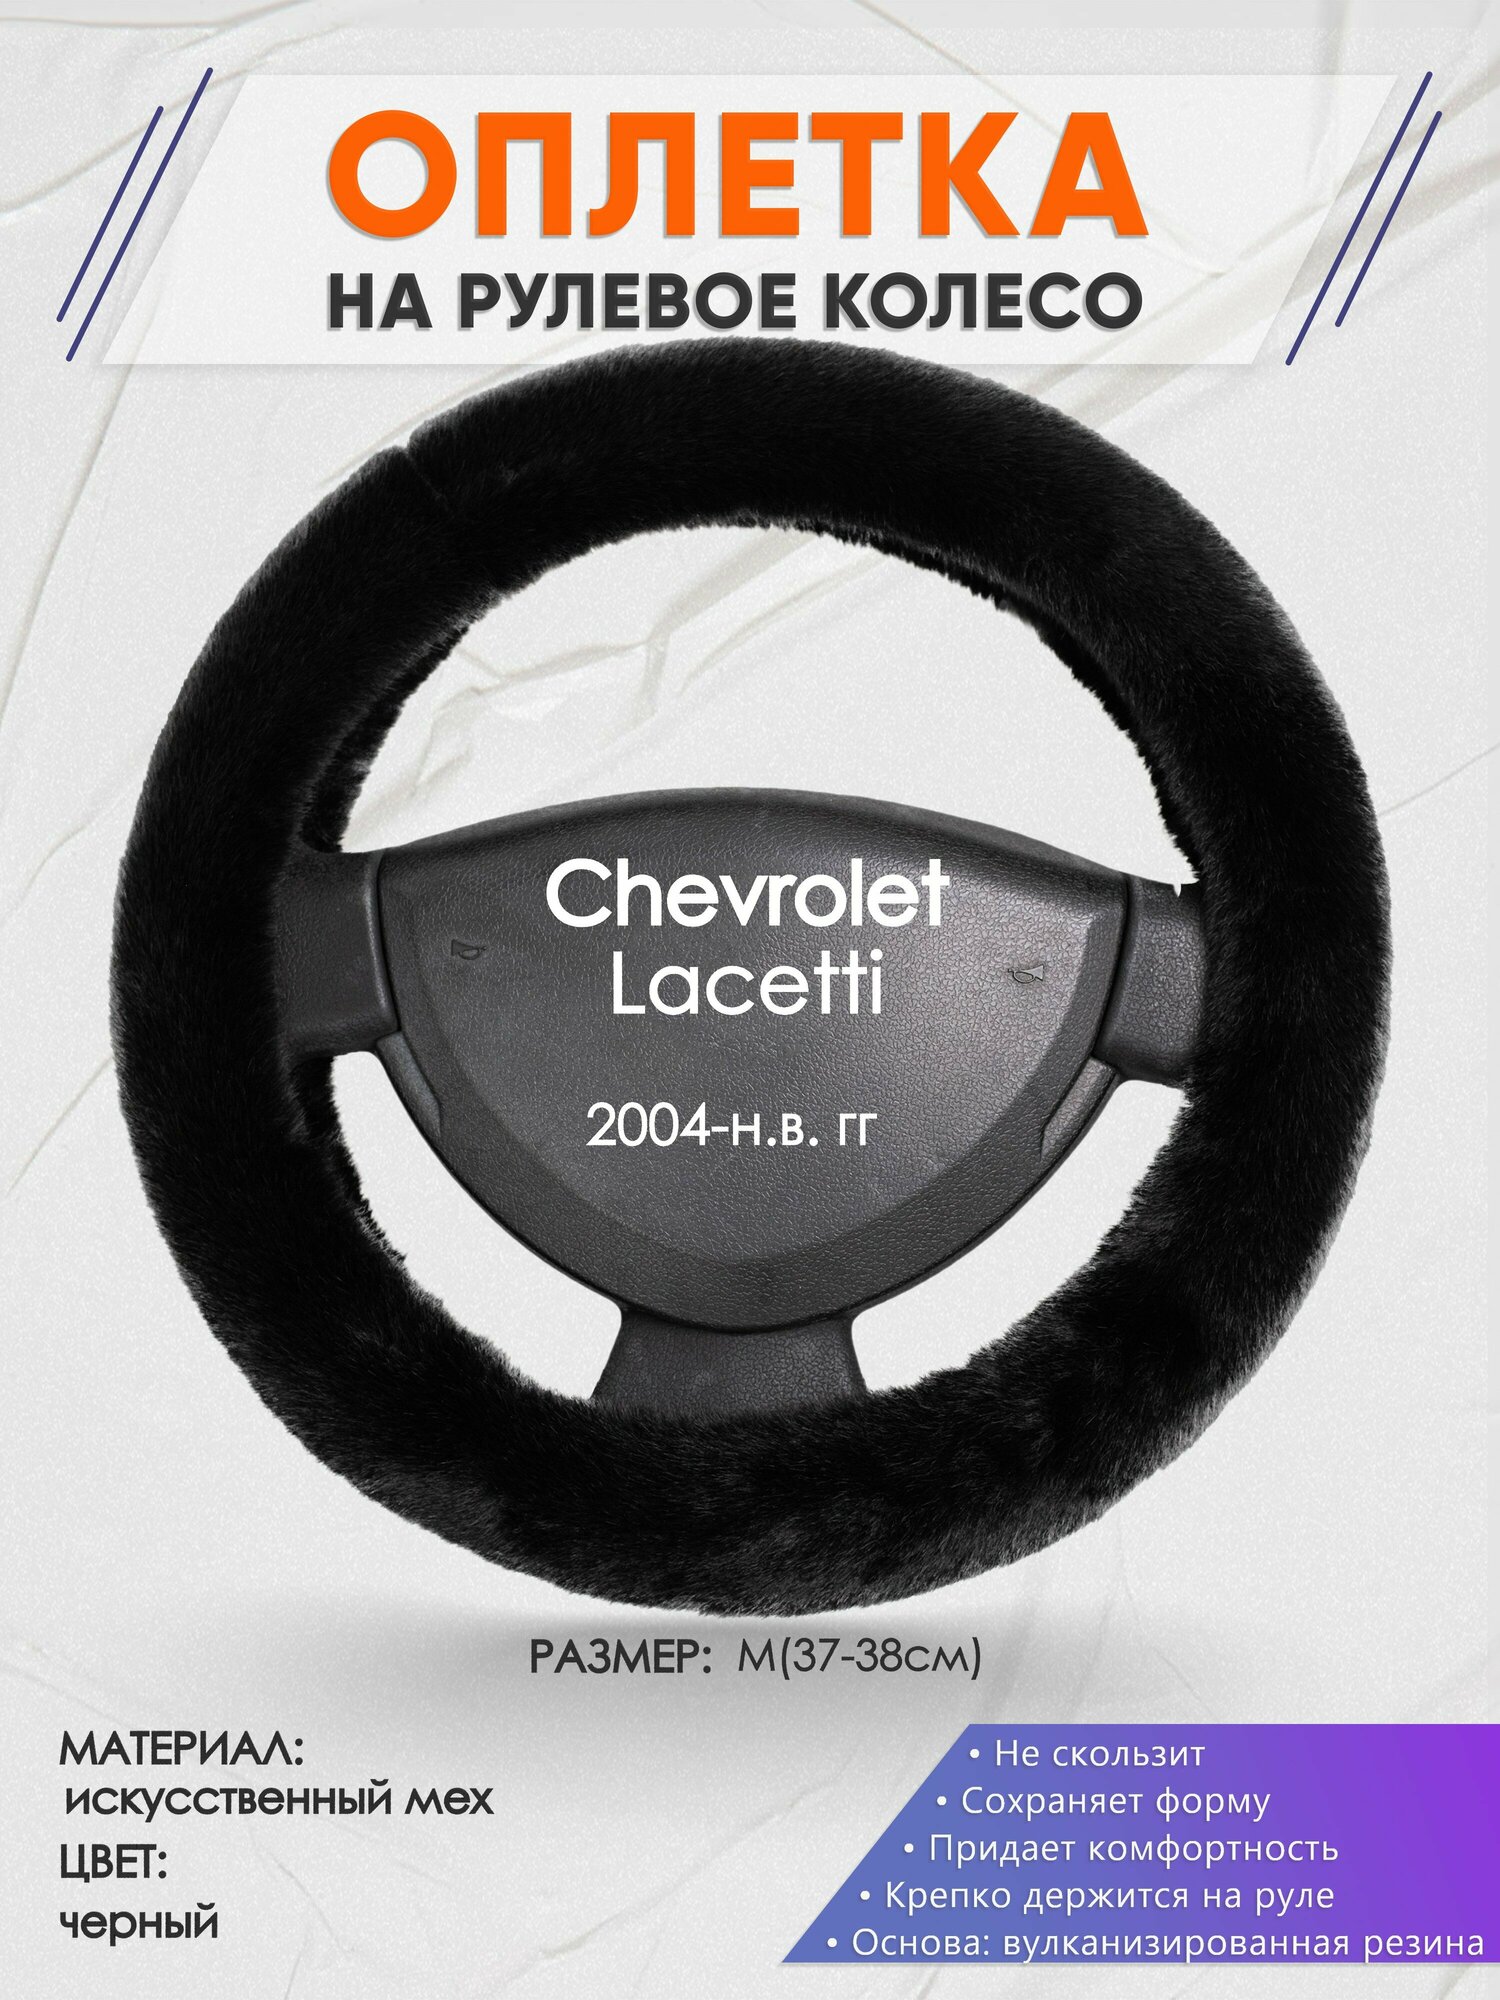 Оплетка на руль для Chevrolet Lacetti (Шевроле Лачети) 2004-н. в, M(37-38см), Искусственный мех 40